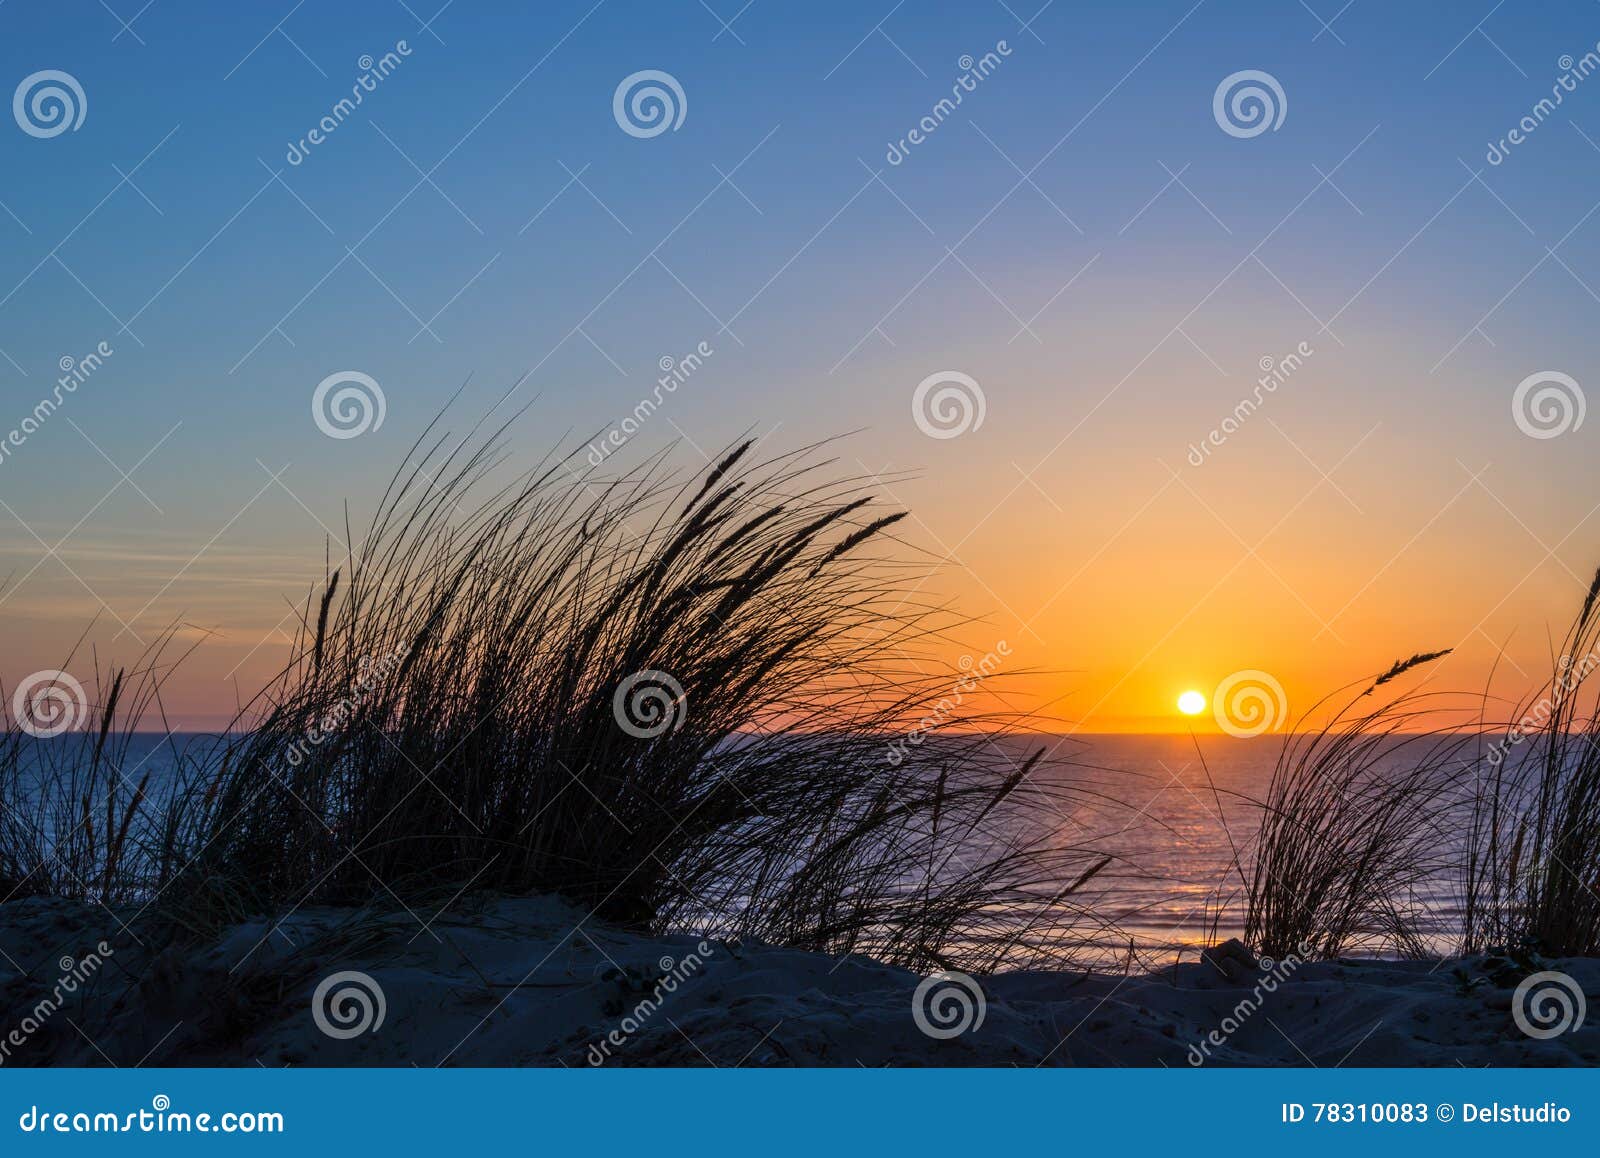 sunset on atlantic ocean, beach grass silhouette in france